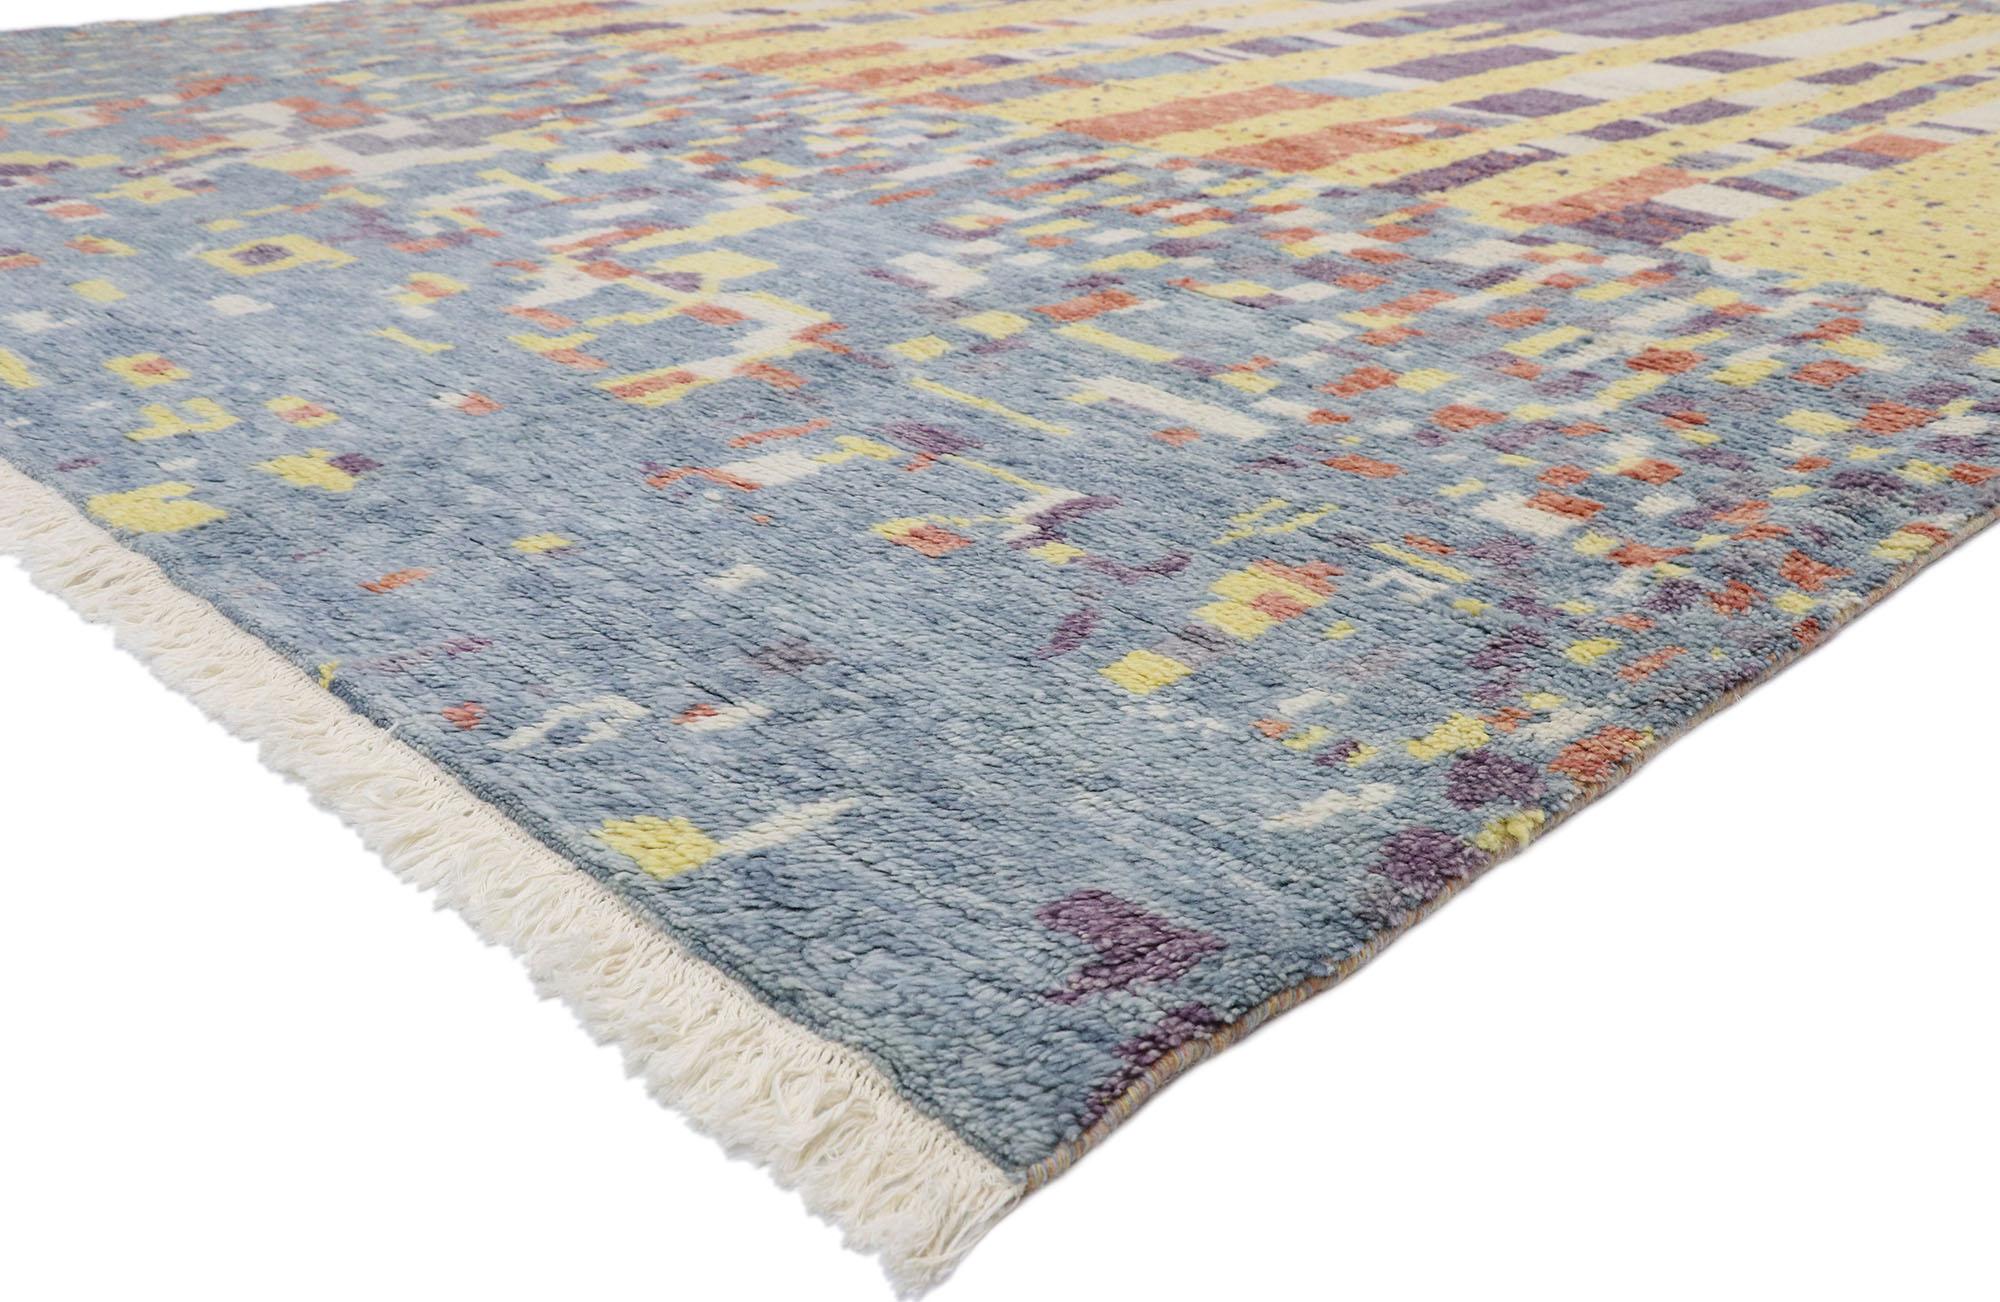 30356 Neuer zeitgenössischer Teppich im marokkanischen Stil, inspiriert von Gunta Stölzl 09'10 x 13'09. Dieser handgeknüpfte Wollteppich im modernen marokkanischen Stil besticht durch sein kühnes, ausdrucksstarkes Design, seine unglaubliche